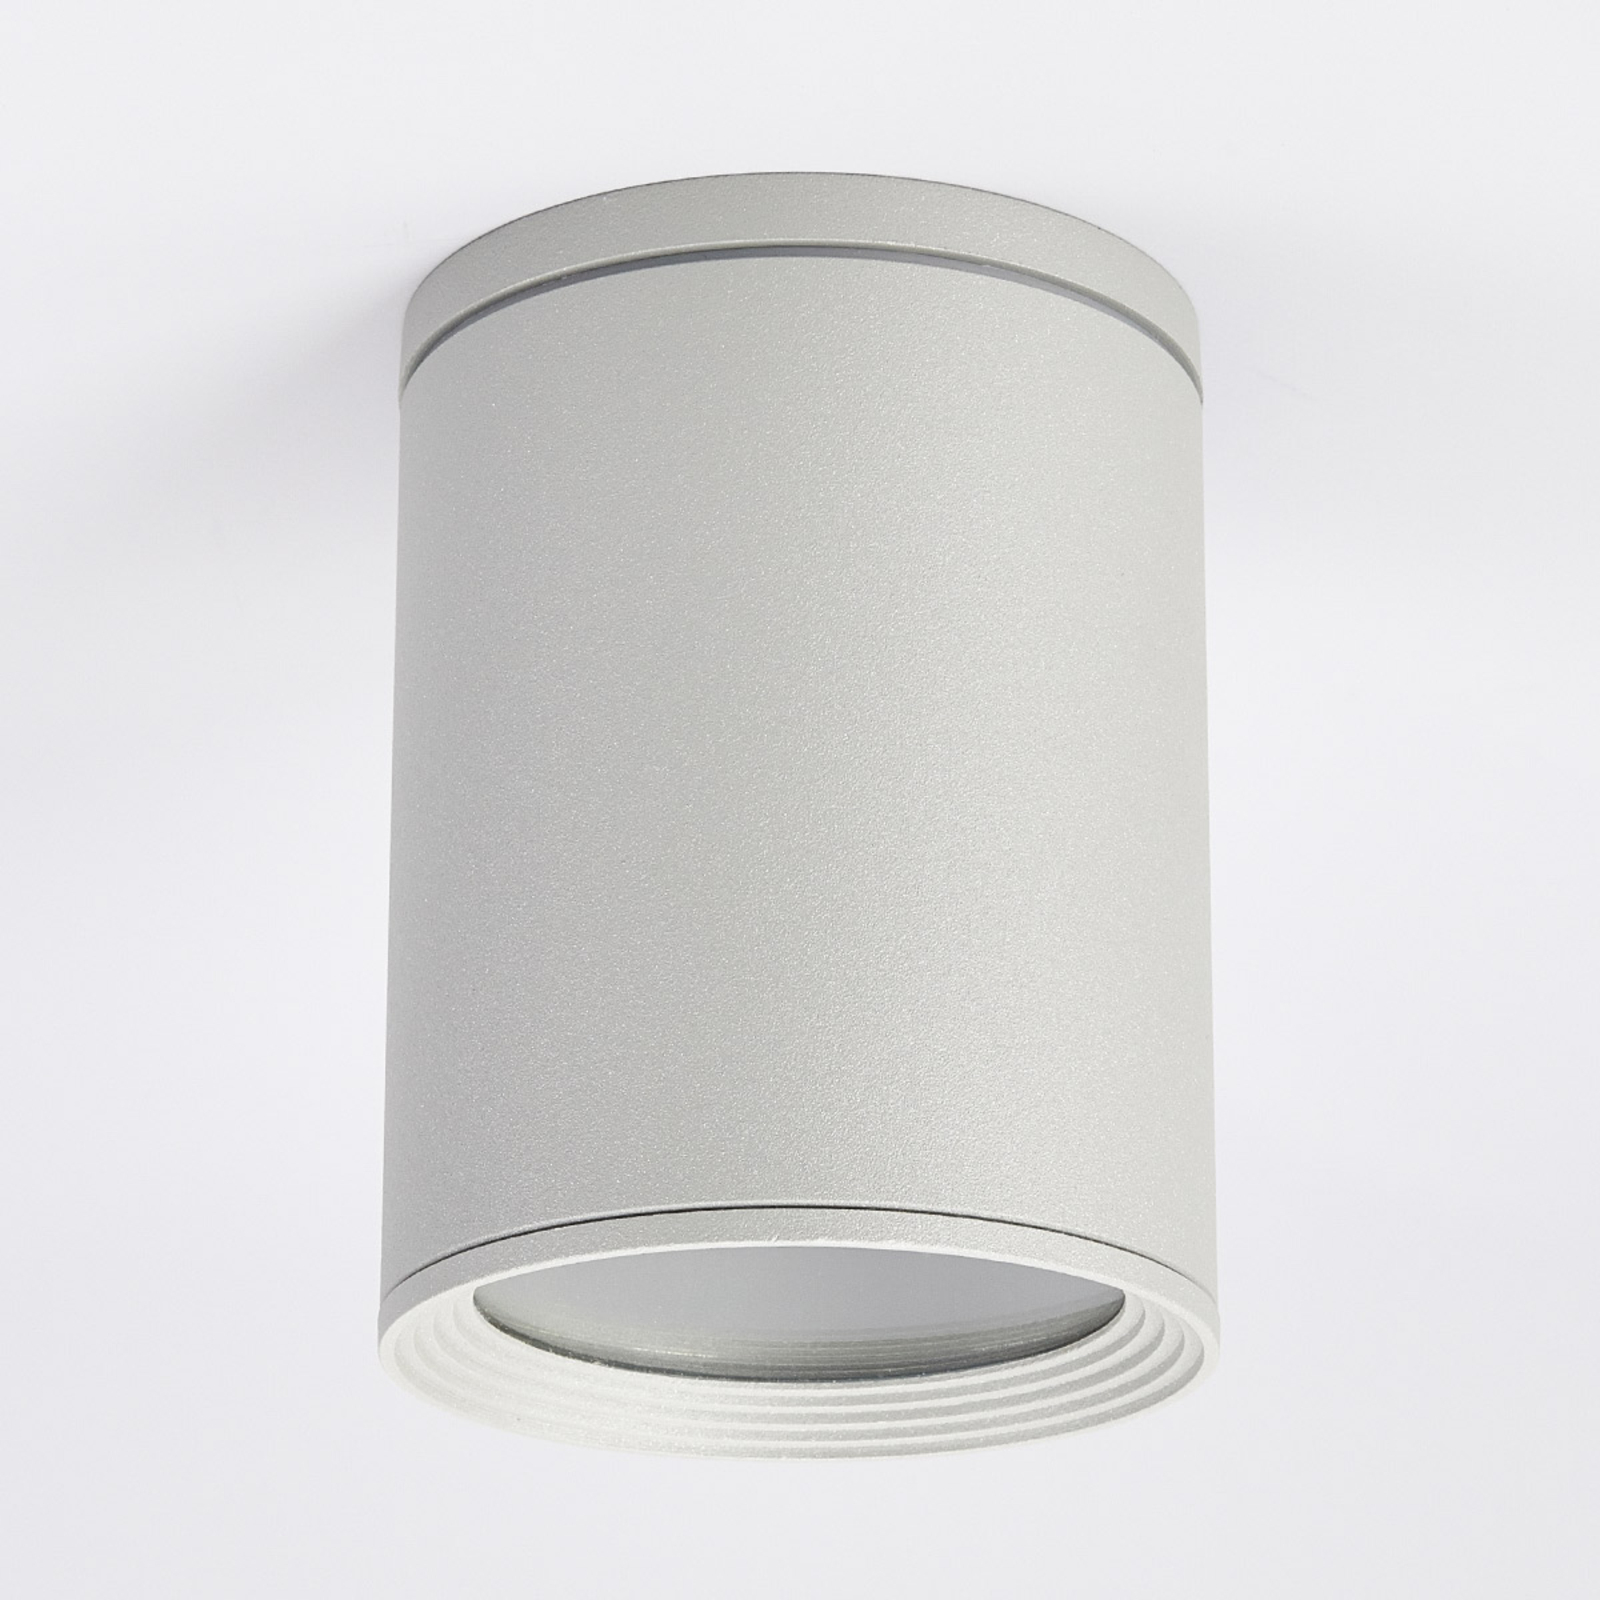 Faretto soffitto Minna, cilindrico, grigio argento